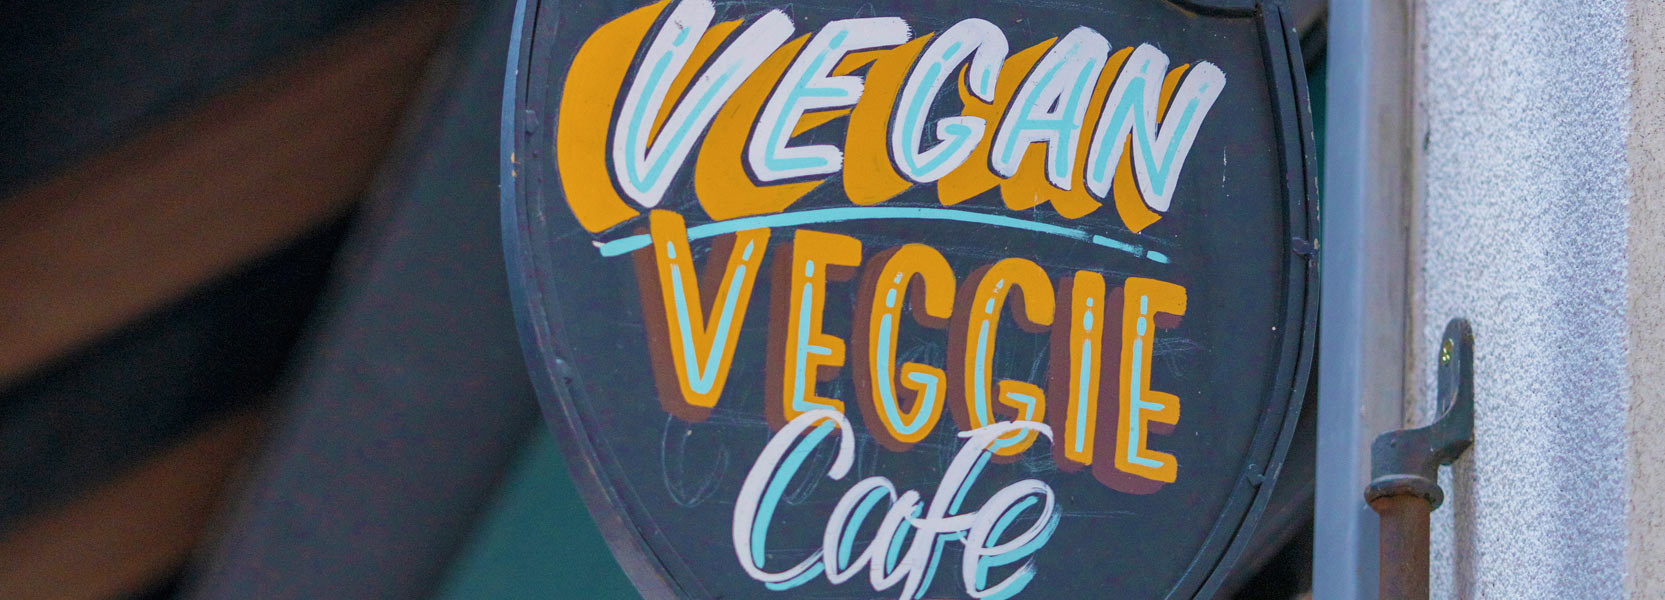 Vegan Veggie Cafe